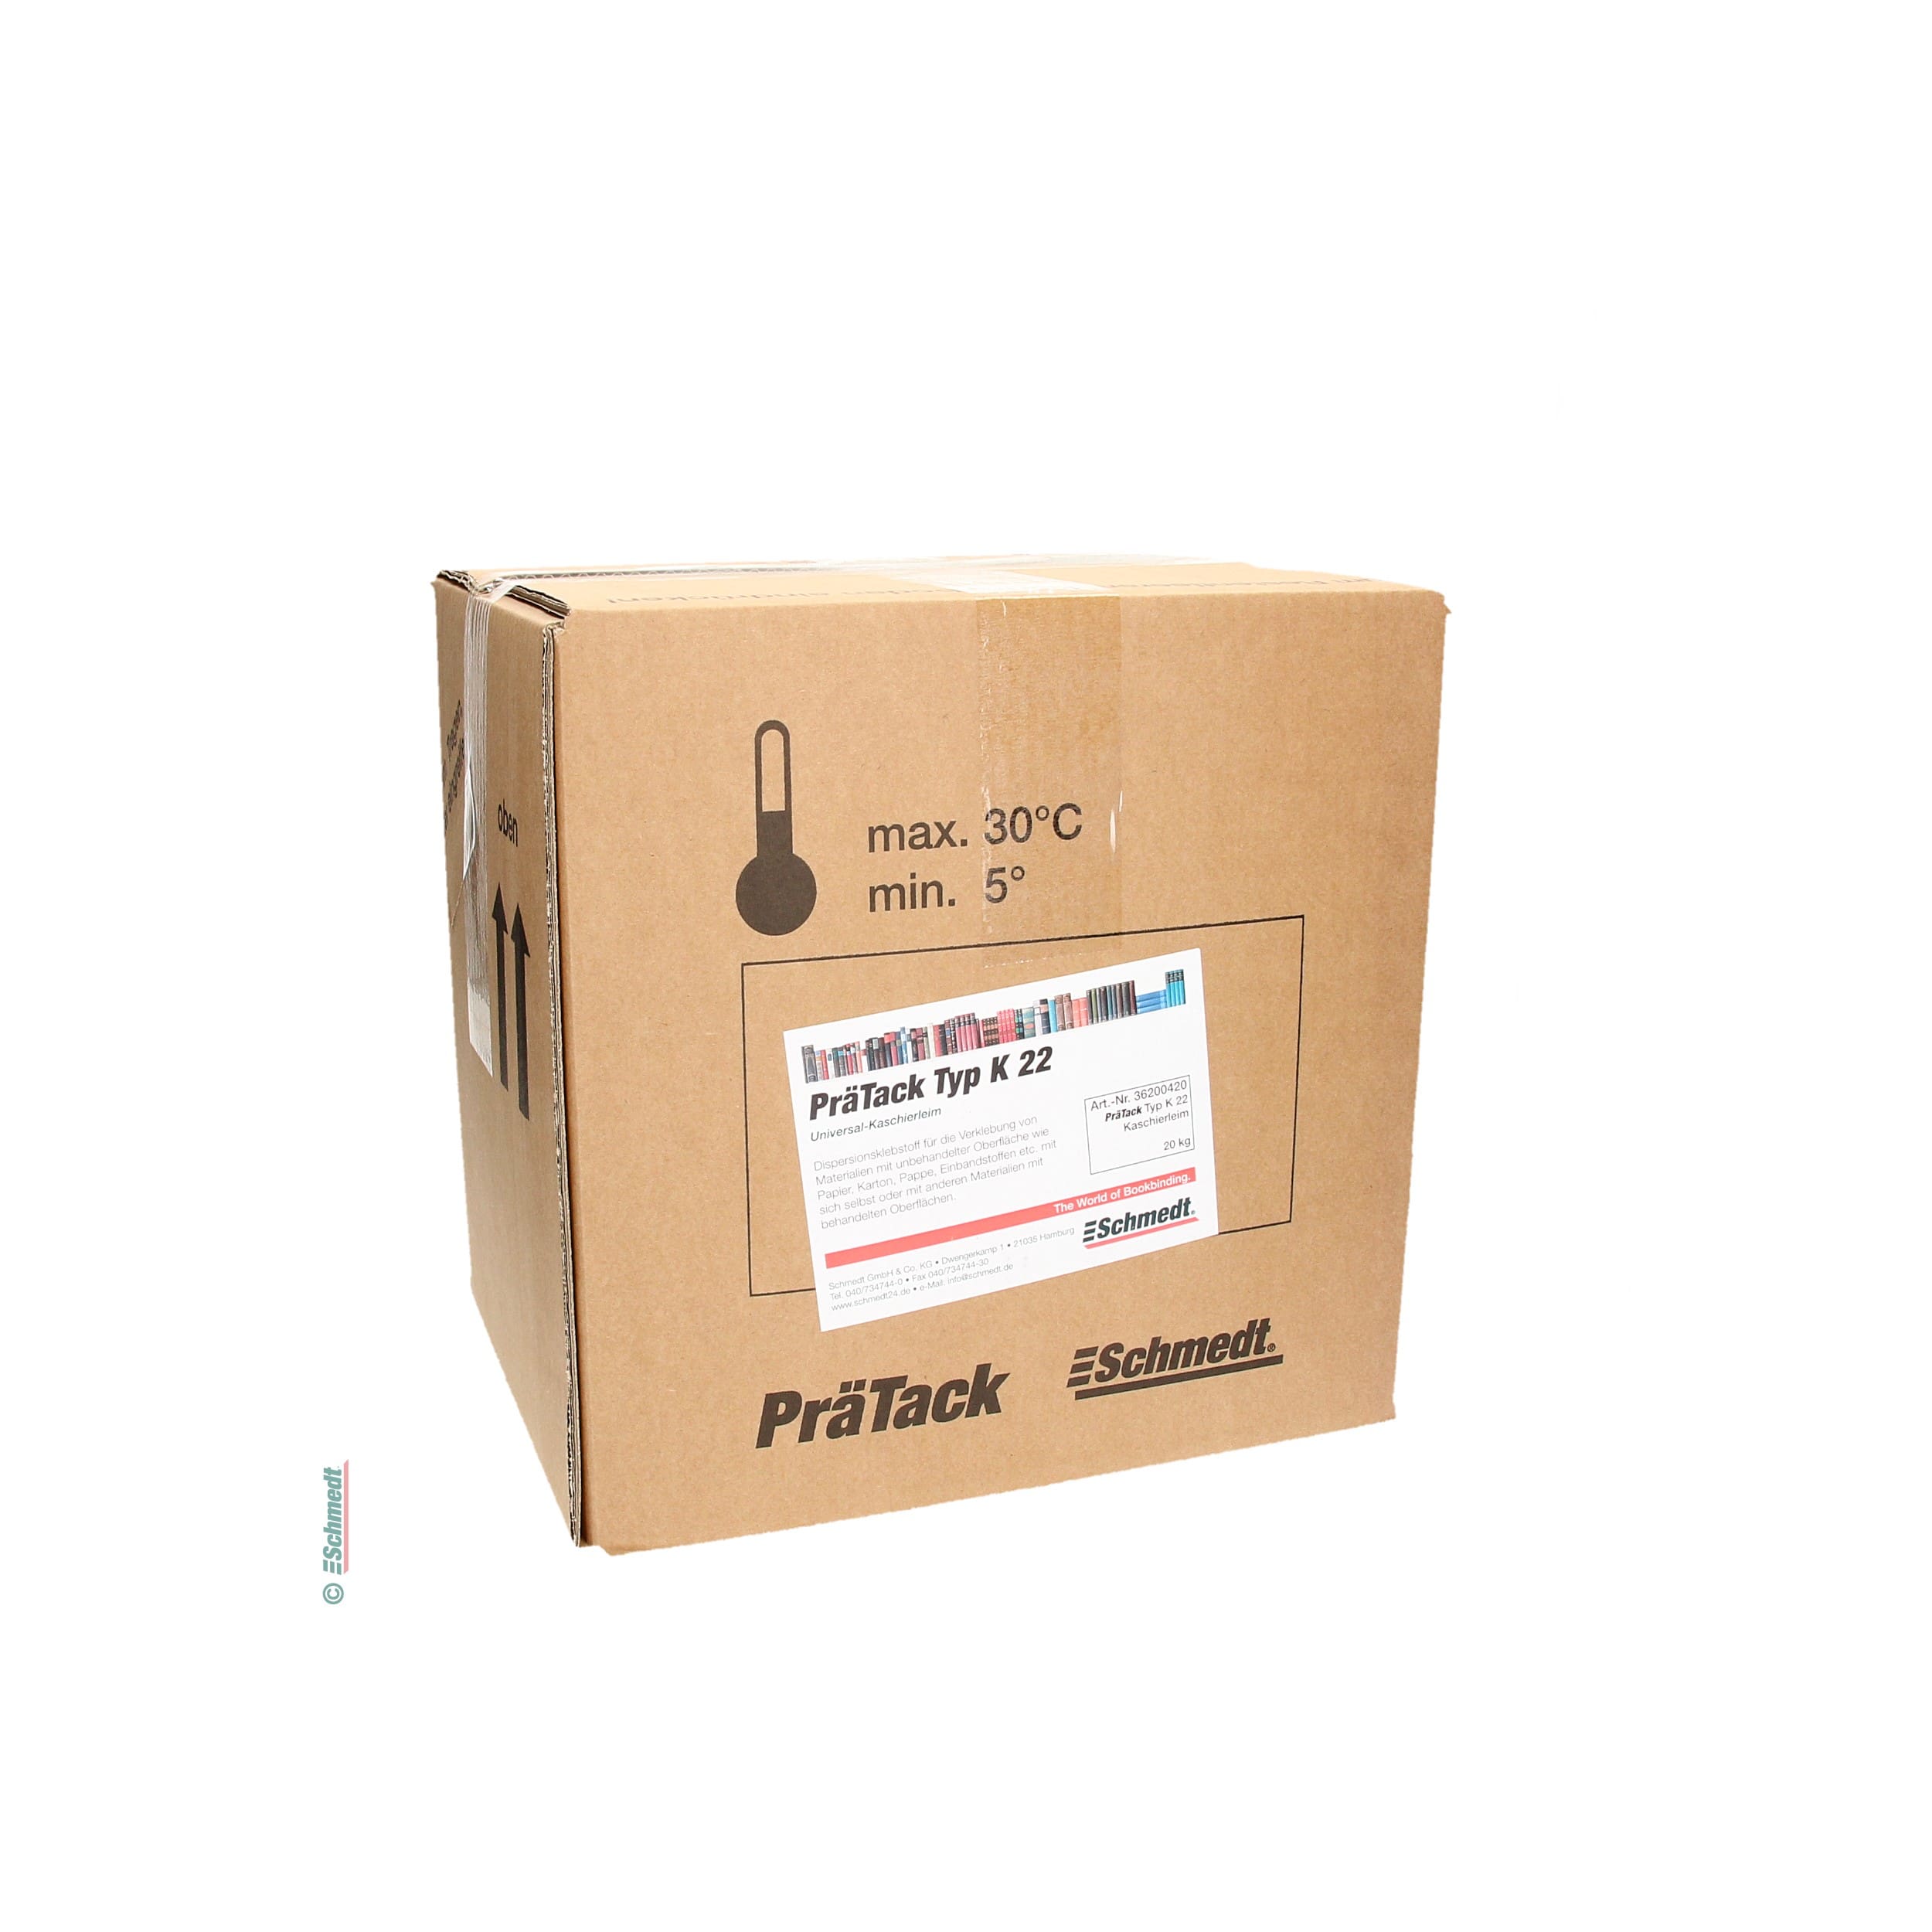 PräTack K22 - Contenido Bag-in-Box / 20 kg - para el contracolado de materiales de superficie sin tratar como papeles, cartones, cartulinas,...